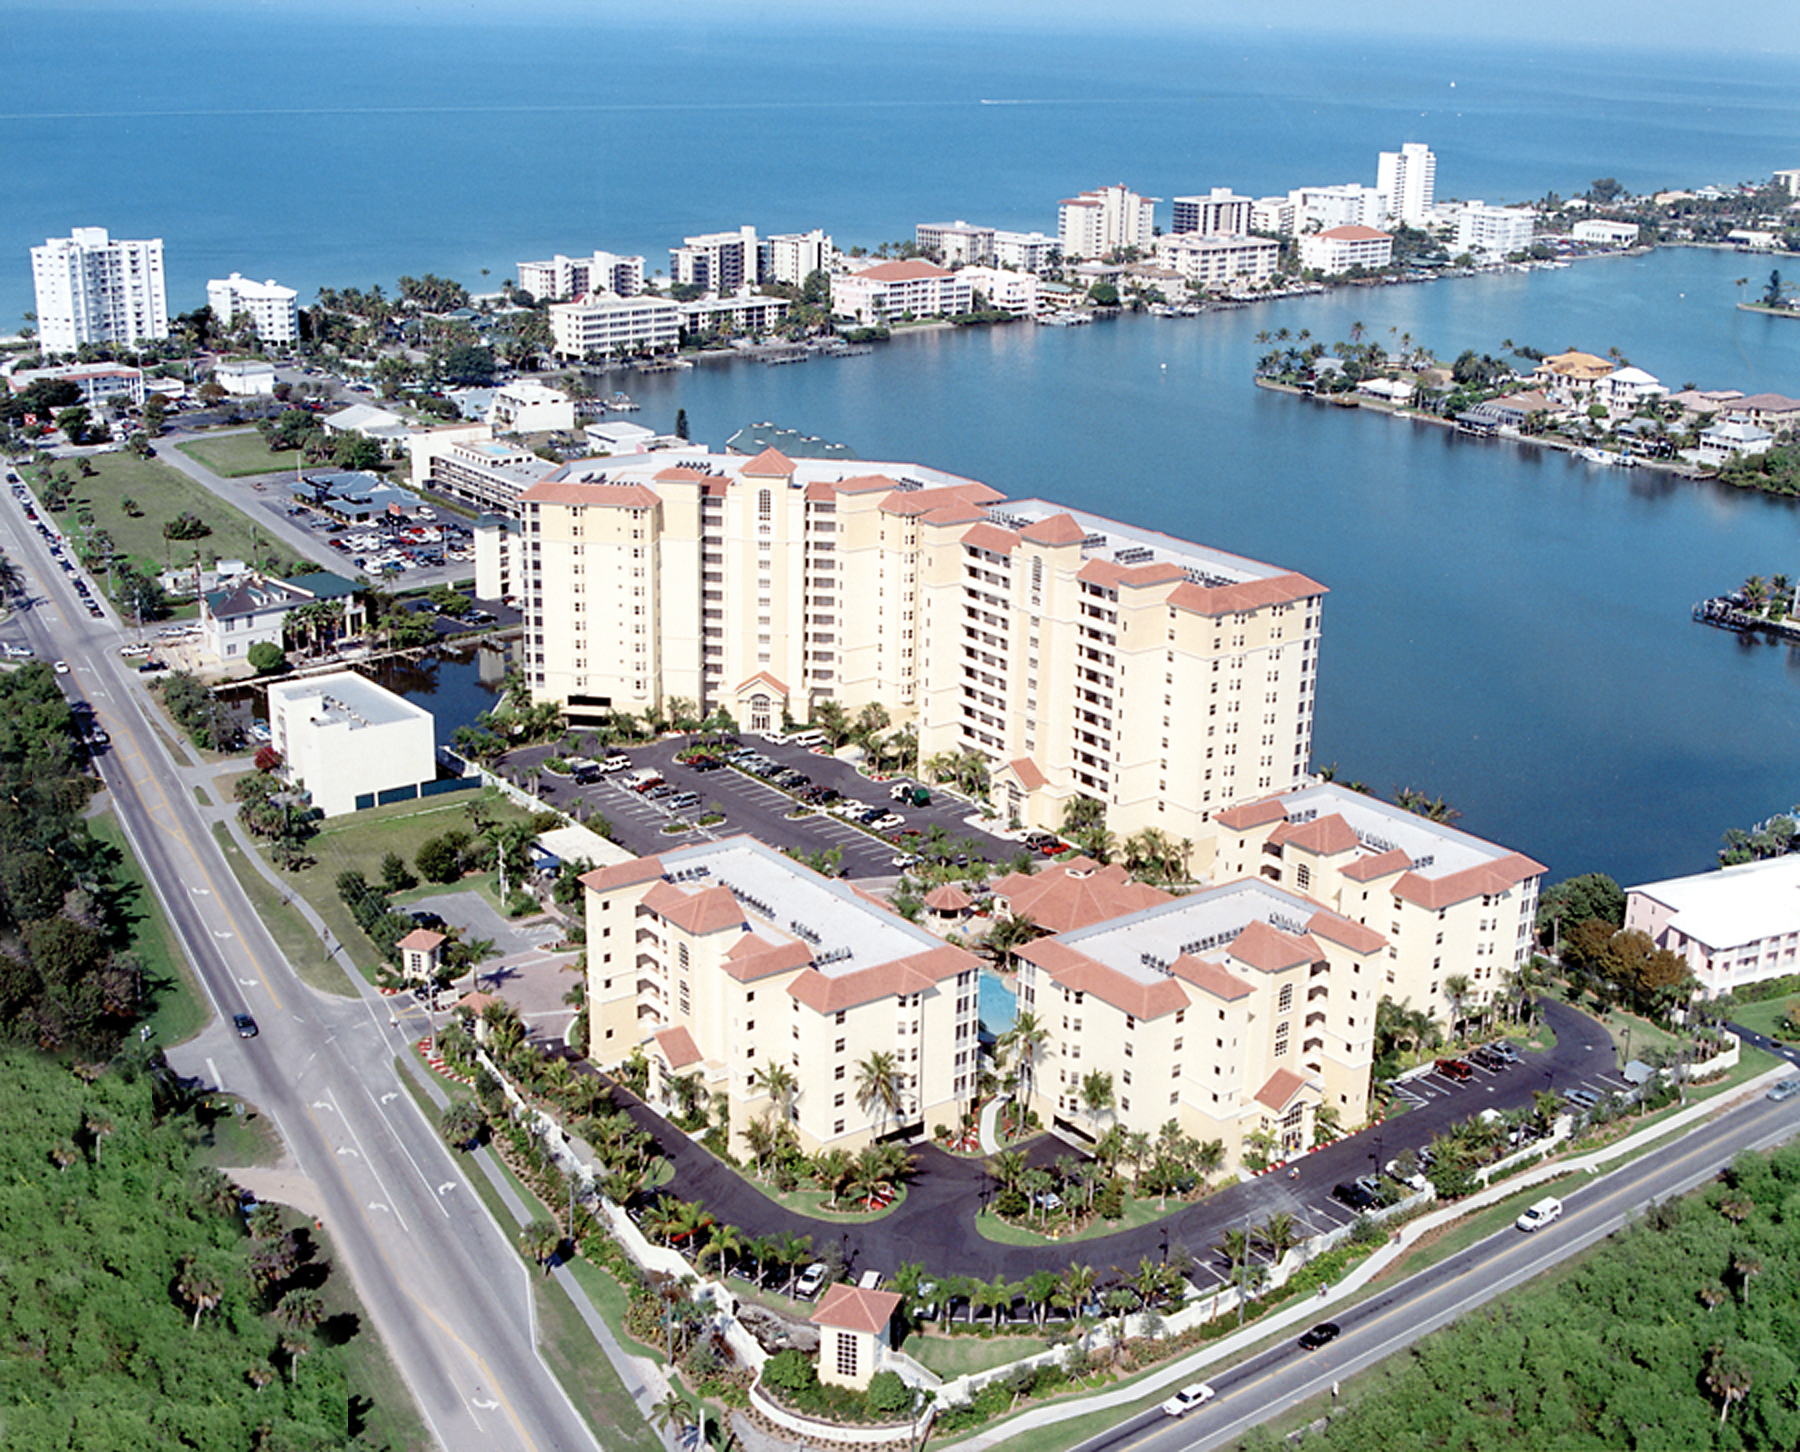 Aerial of Regatta at Vanderbilt Beach in Naples, Florida